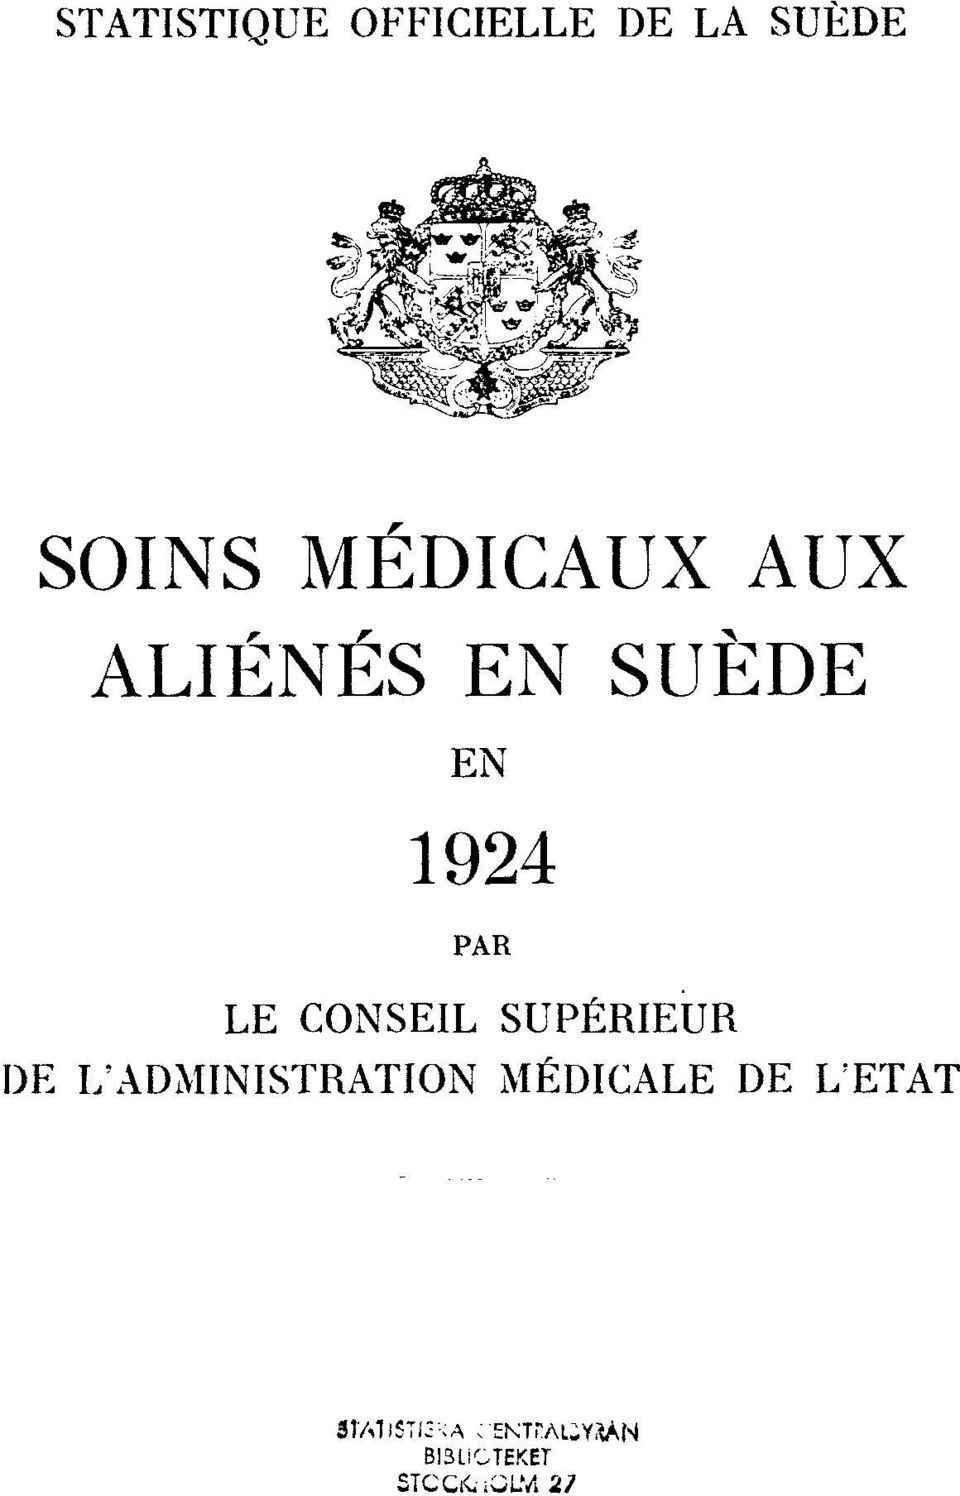 EN 1924 PAR LE CONSEIL SUPÉRIEUR DE